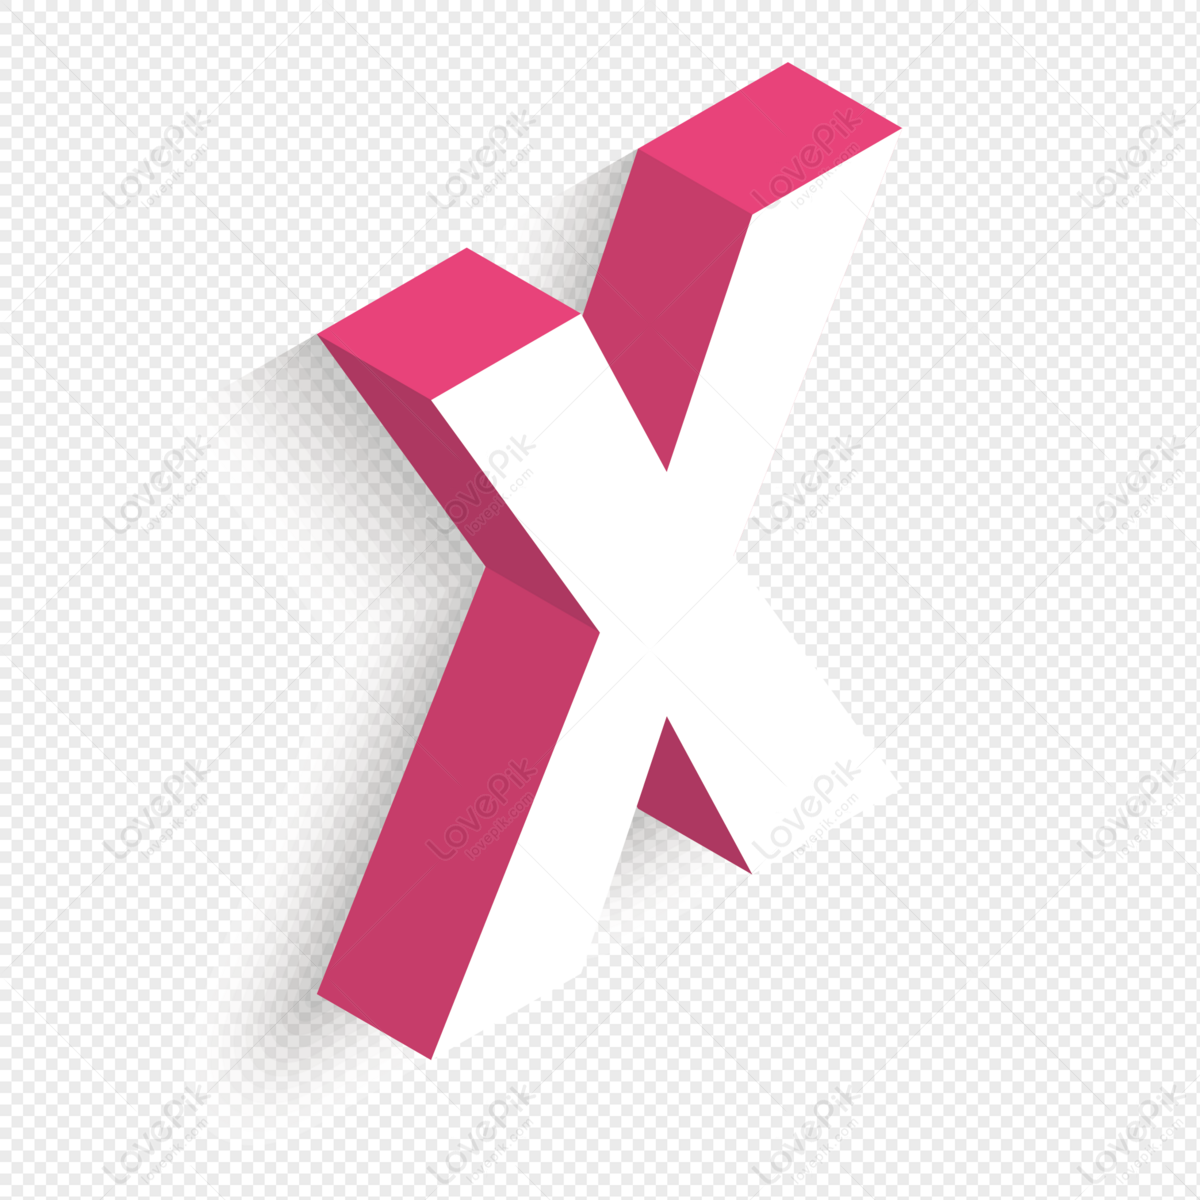 Harf X Logosu, X, Logo, X Logosu PNG Resim ve çizimi ücretsiz Indirmek Için  Arka Plan Ile